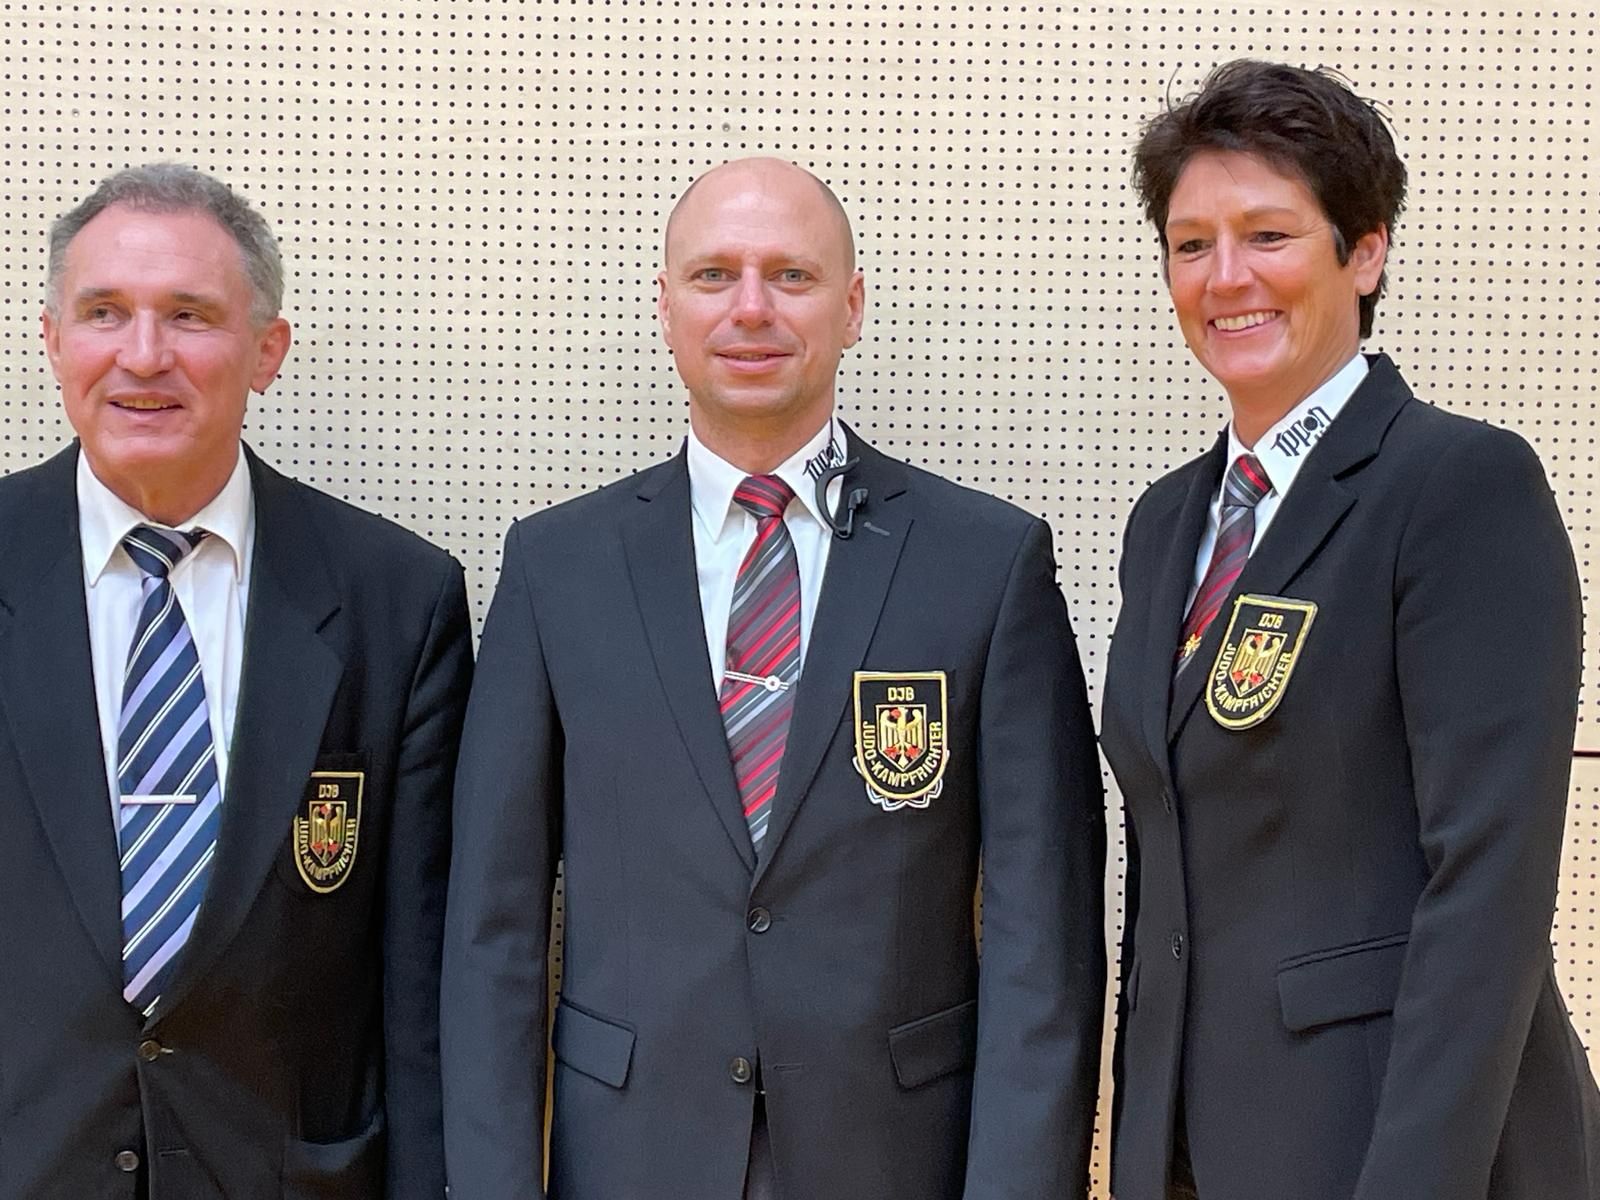 B-Kampfrichter Manuel Sencar (M.) mit Gruppenreferent Pierre Bruckmann und Manuela Kohlhofer von der BJV-KR-Kommission.